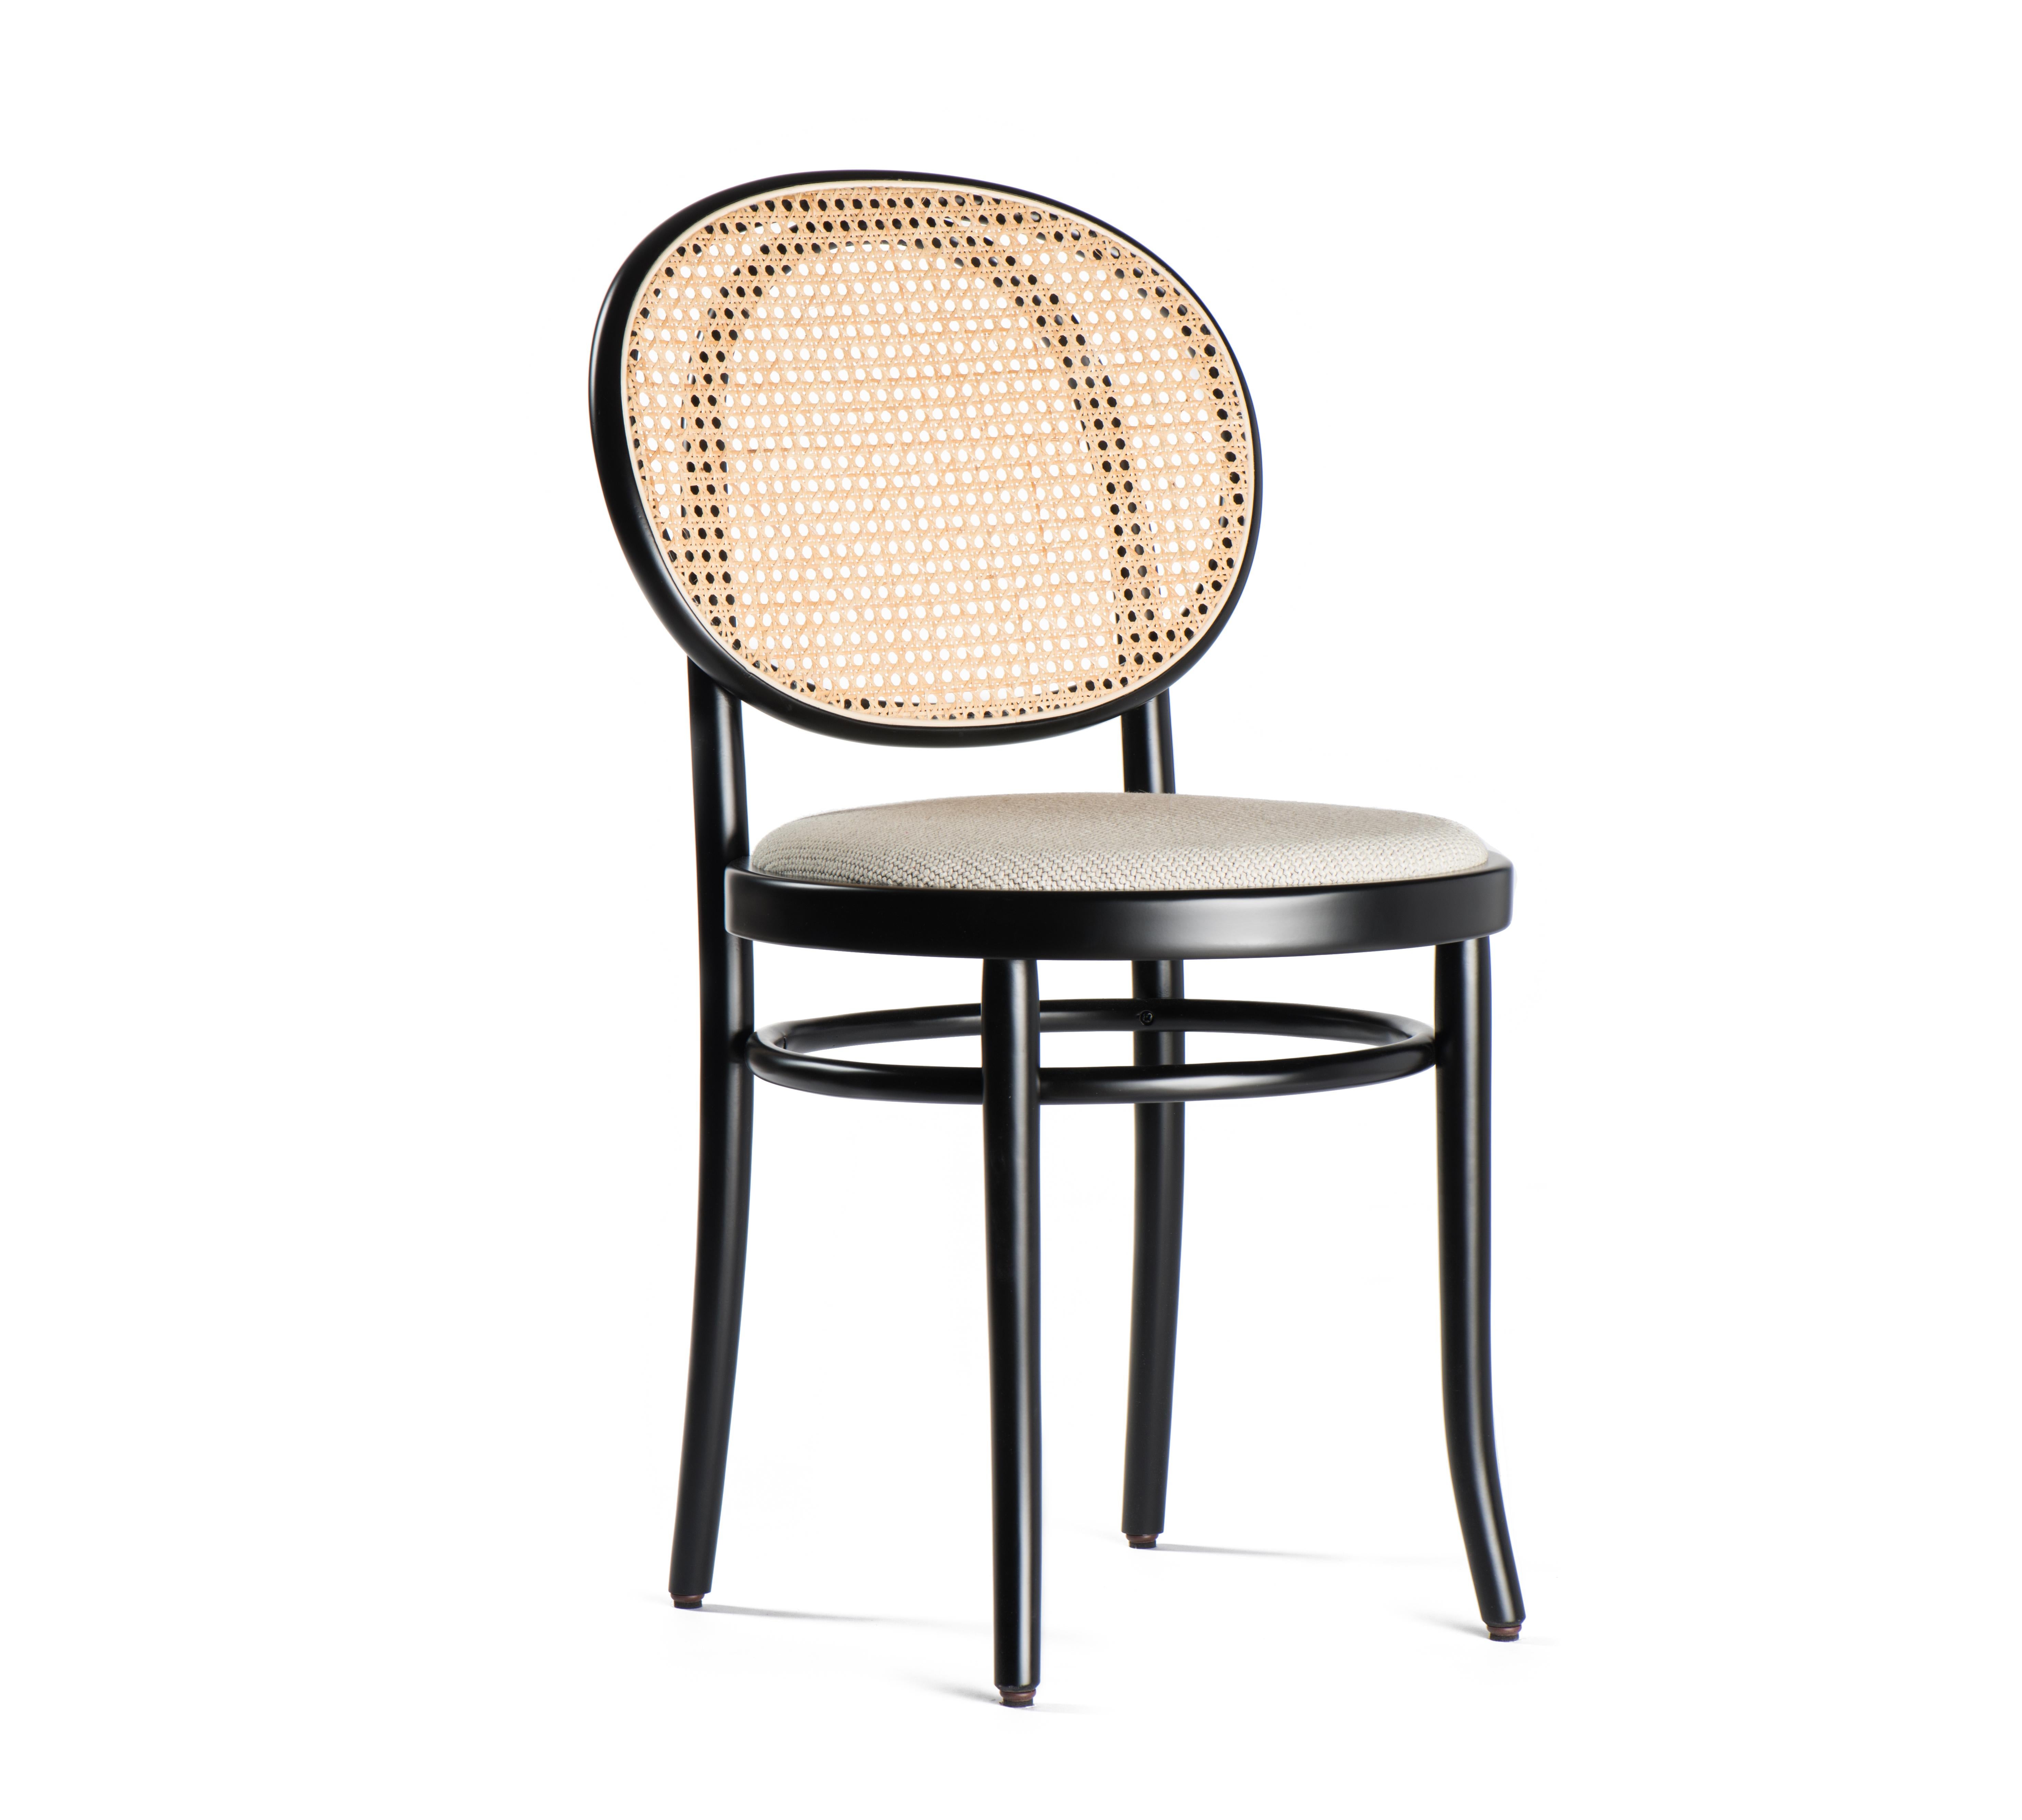 La chaise N.0 de Front est un design qui révèle un nouveau concept d'élégance qui exploite le pouvoir expressif des poinçons distinctifs de GTV : bois courbé et paille de Vienne. Le duo suédois réinterprète ces deux éléments avec un flair